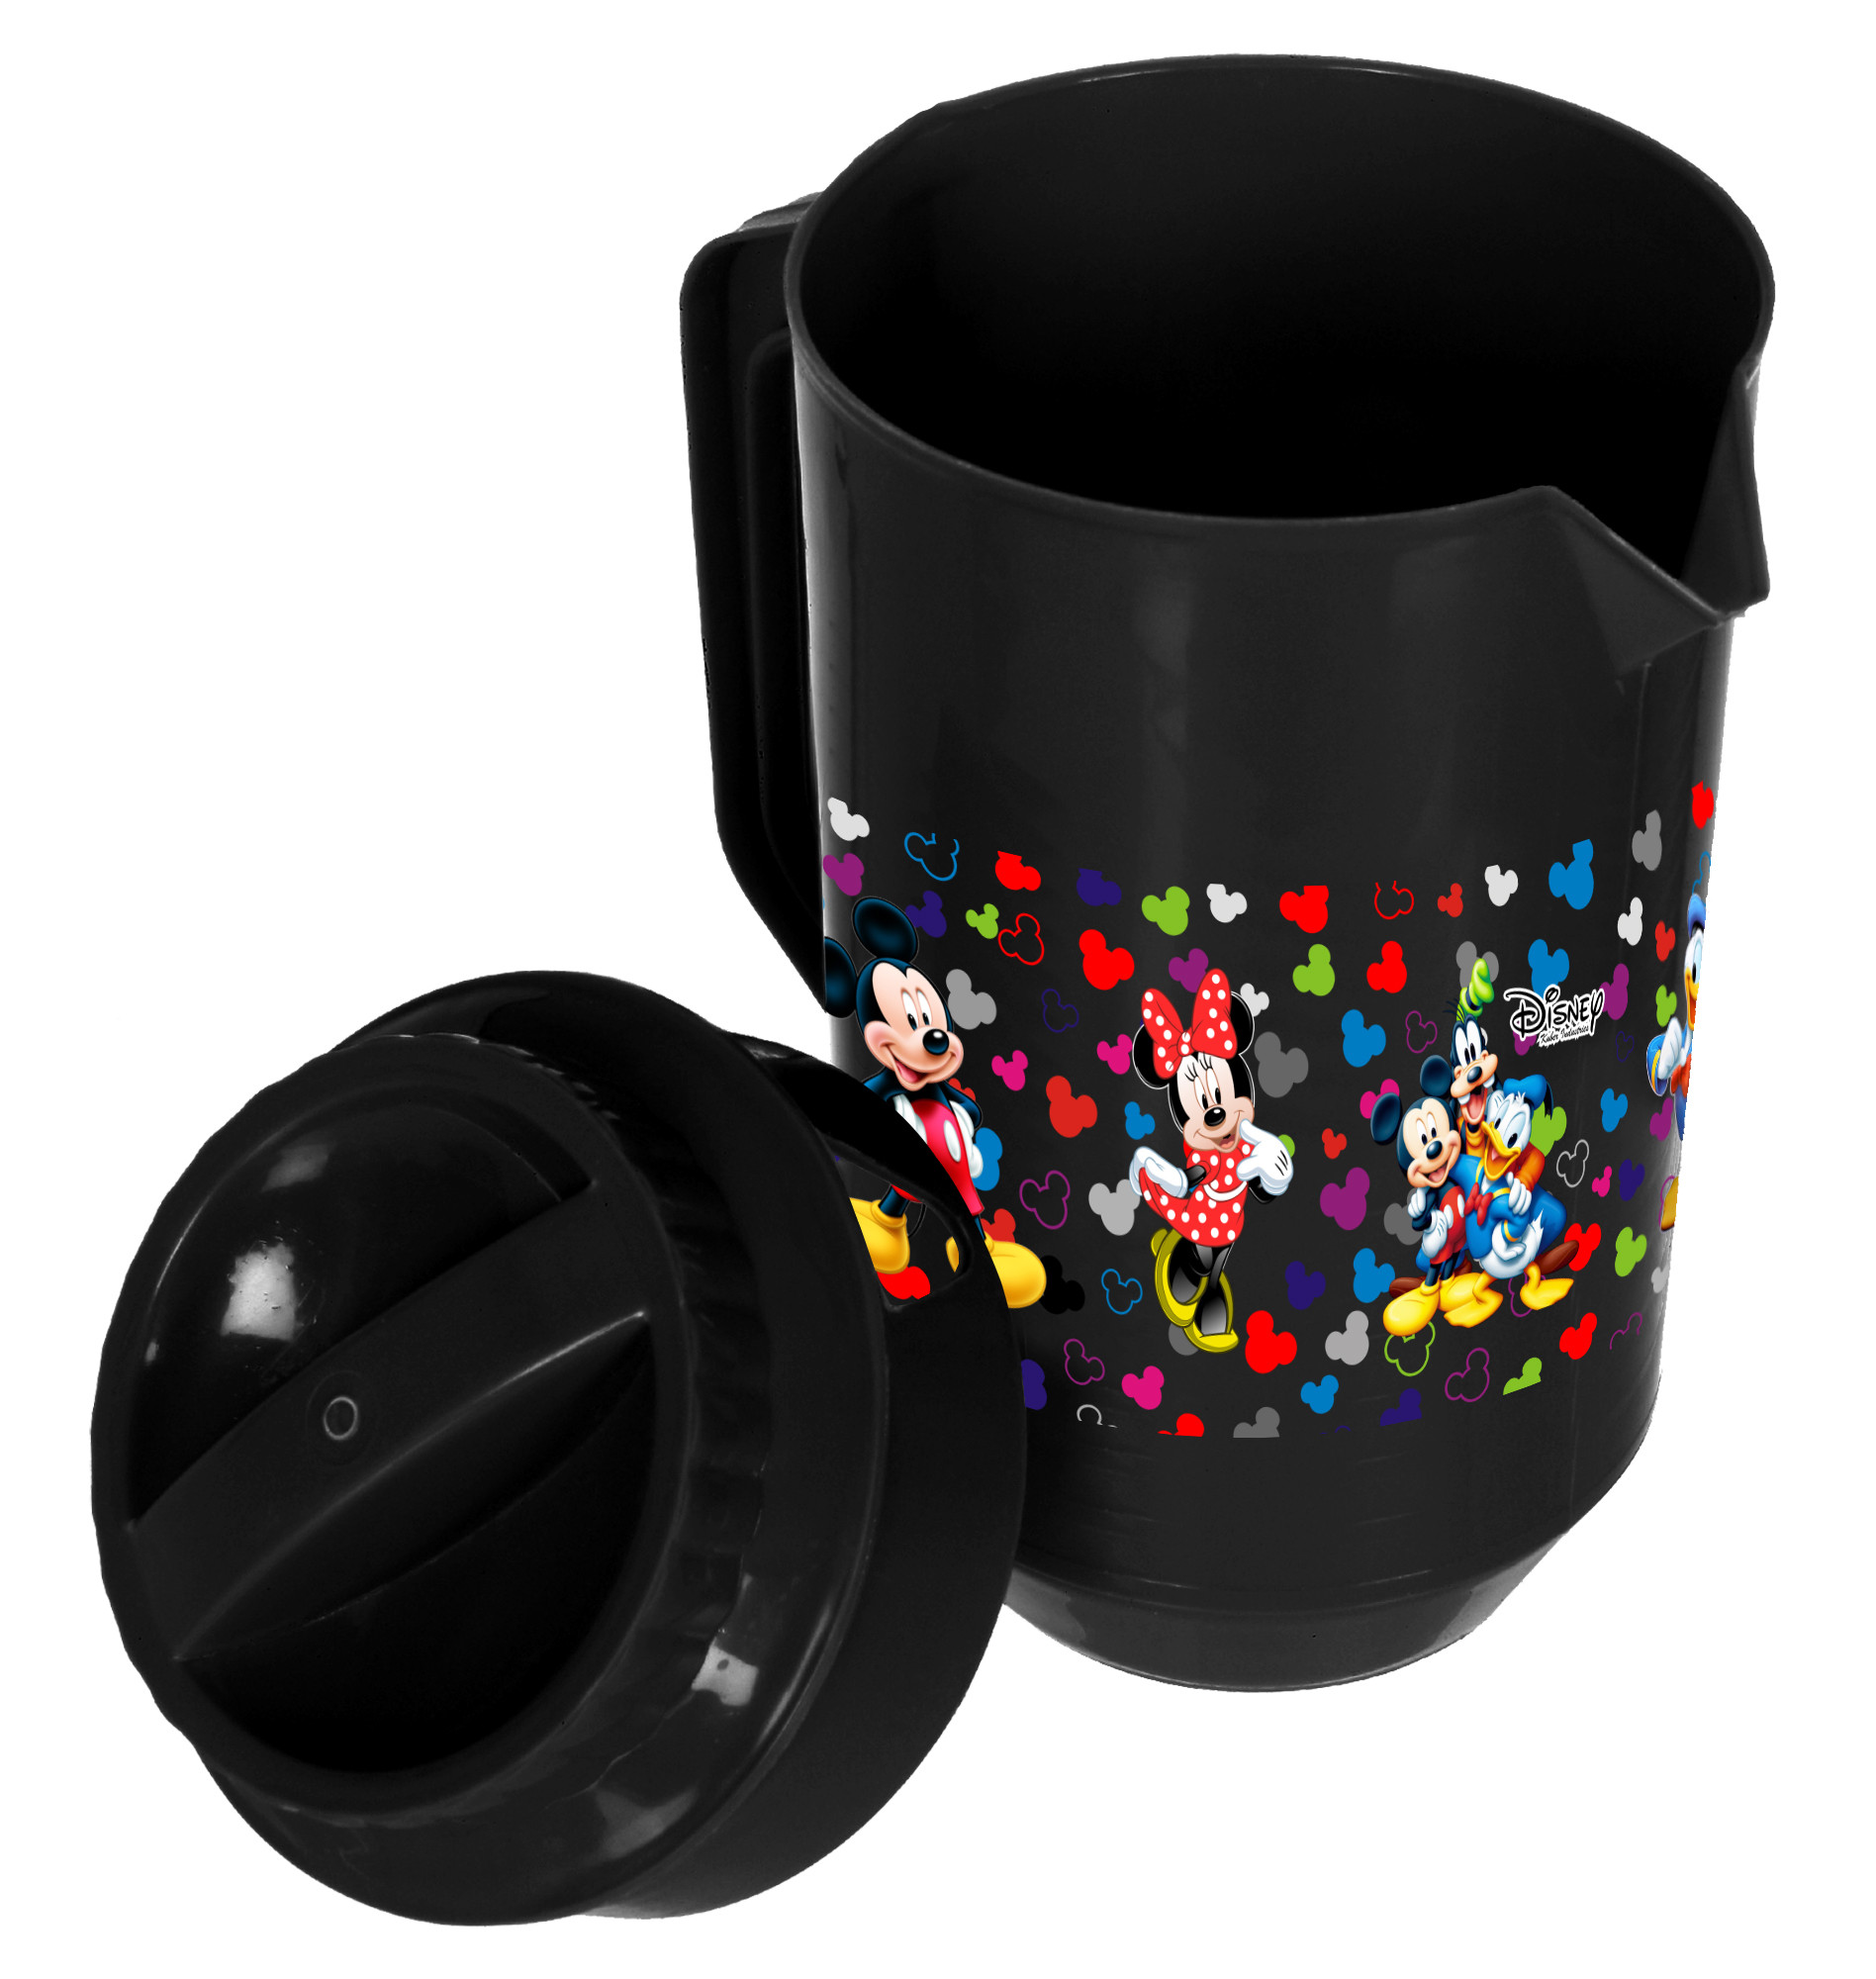 Kuber Industries Disney Team Mickey Print Unbreakable Multipurpose Plastic Water & Juice Jug With Lid,2 Ltr (Black)